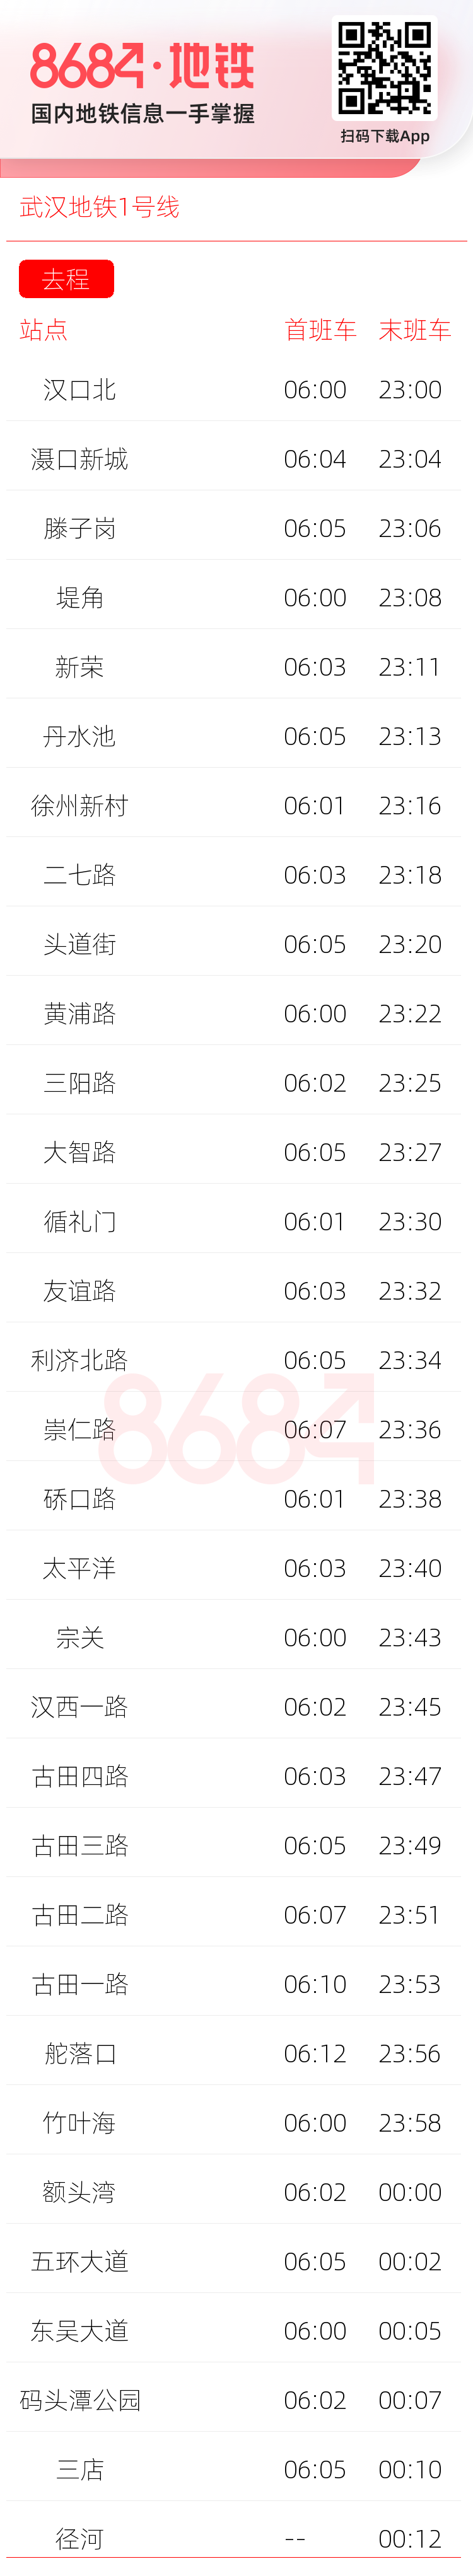 武汉地铁1号线运营时间表